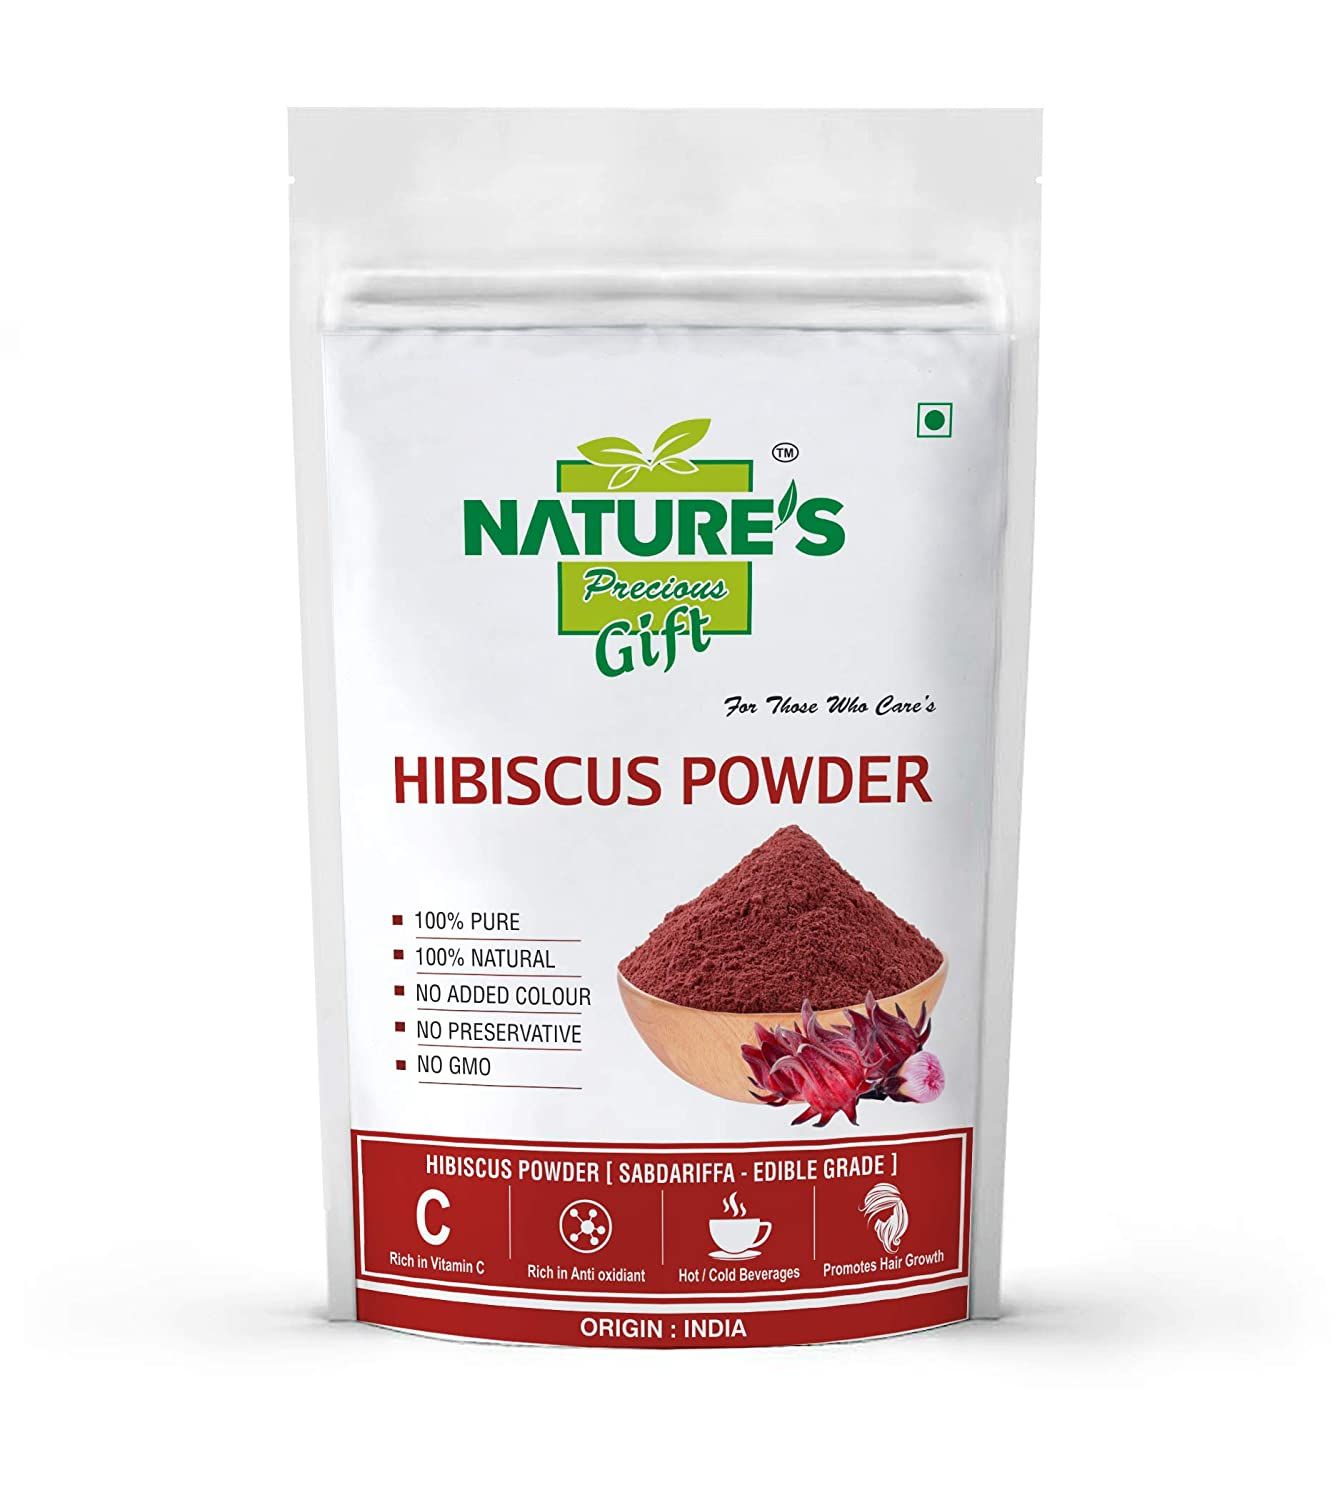 Nature's Gift Hibiscus Powder Image